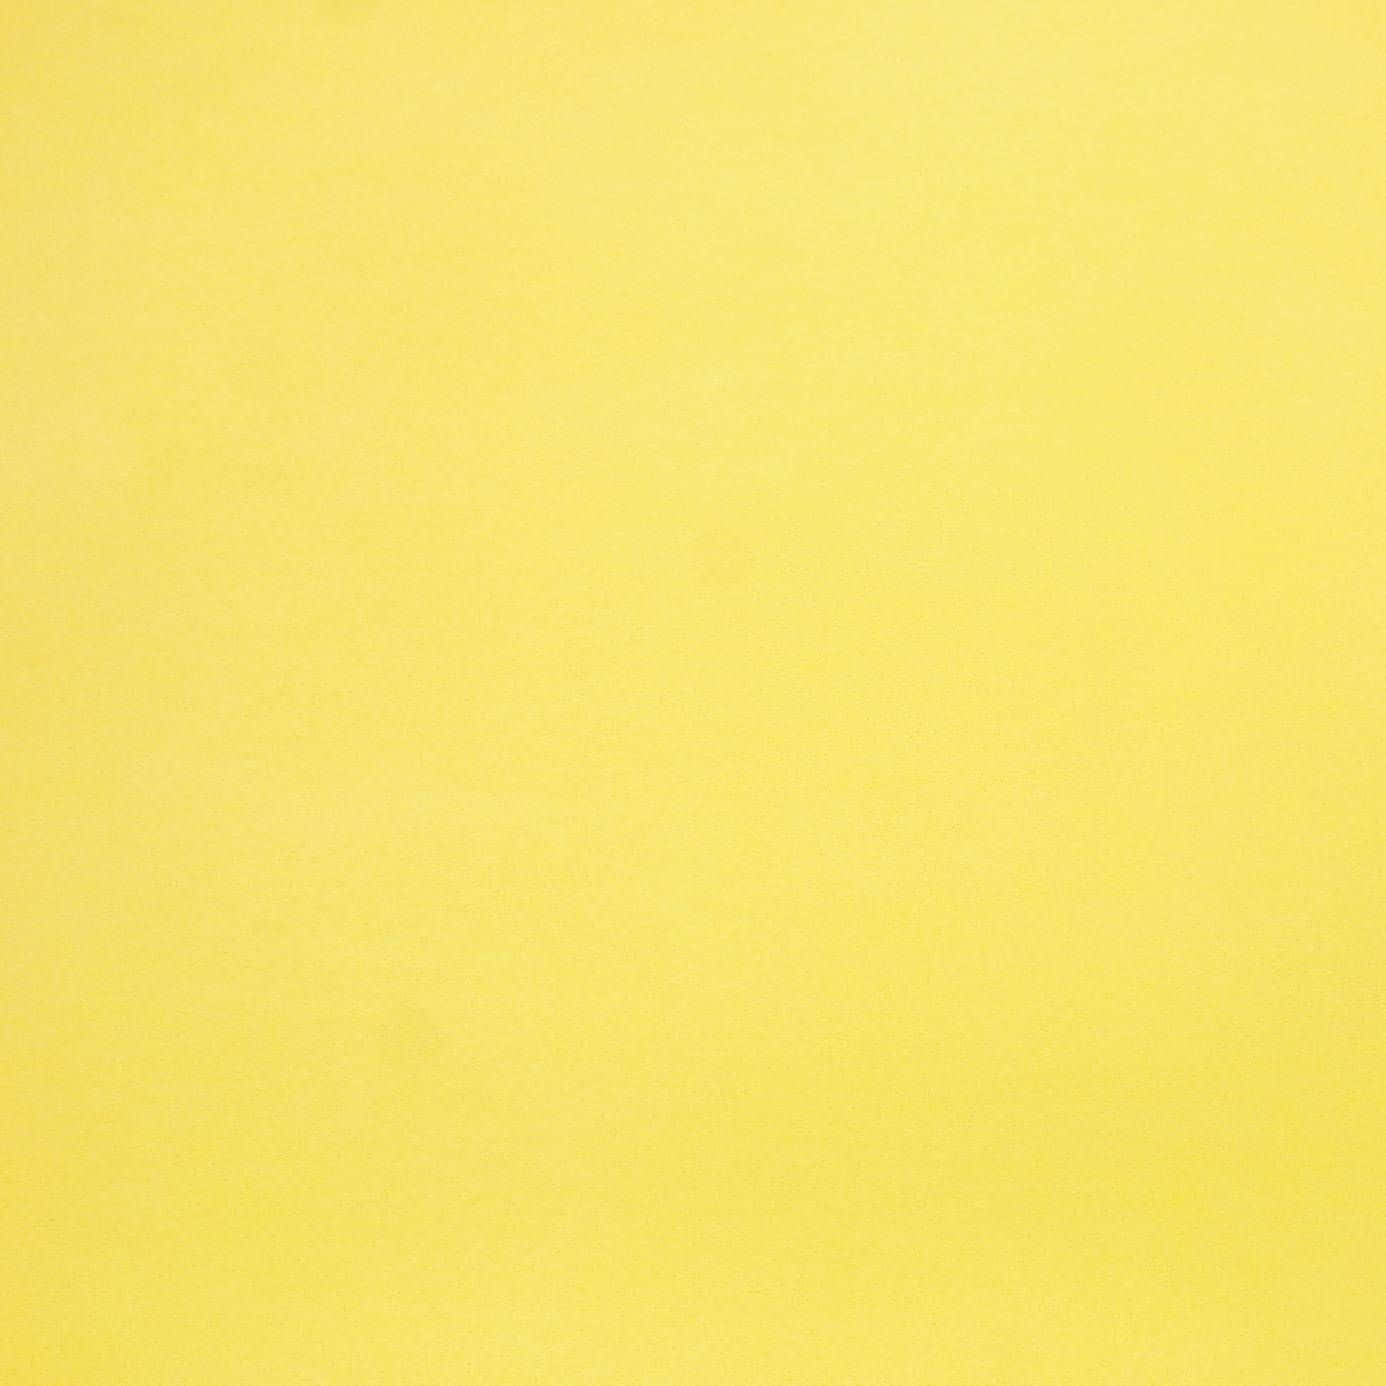 Erhelledeinen Tag Mit Einem Lebendigen Einfarbigen Gelb. Wallpaper